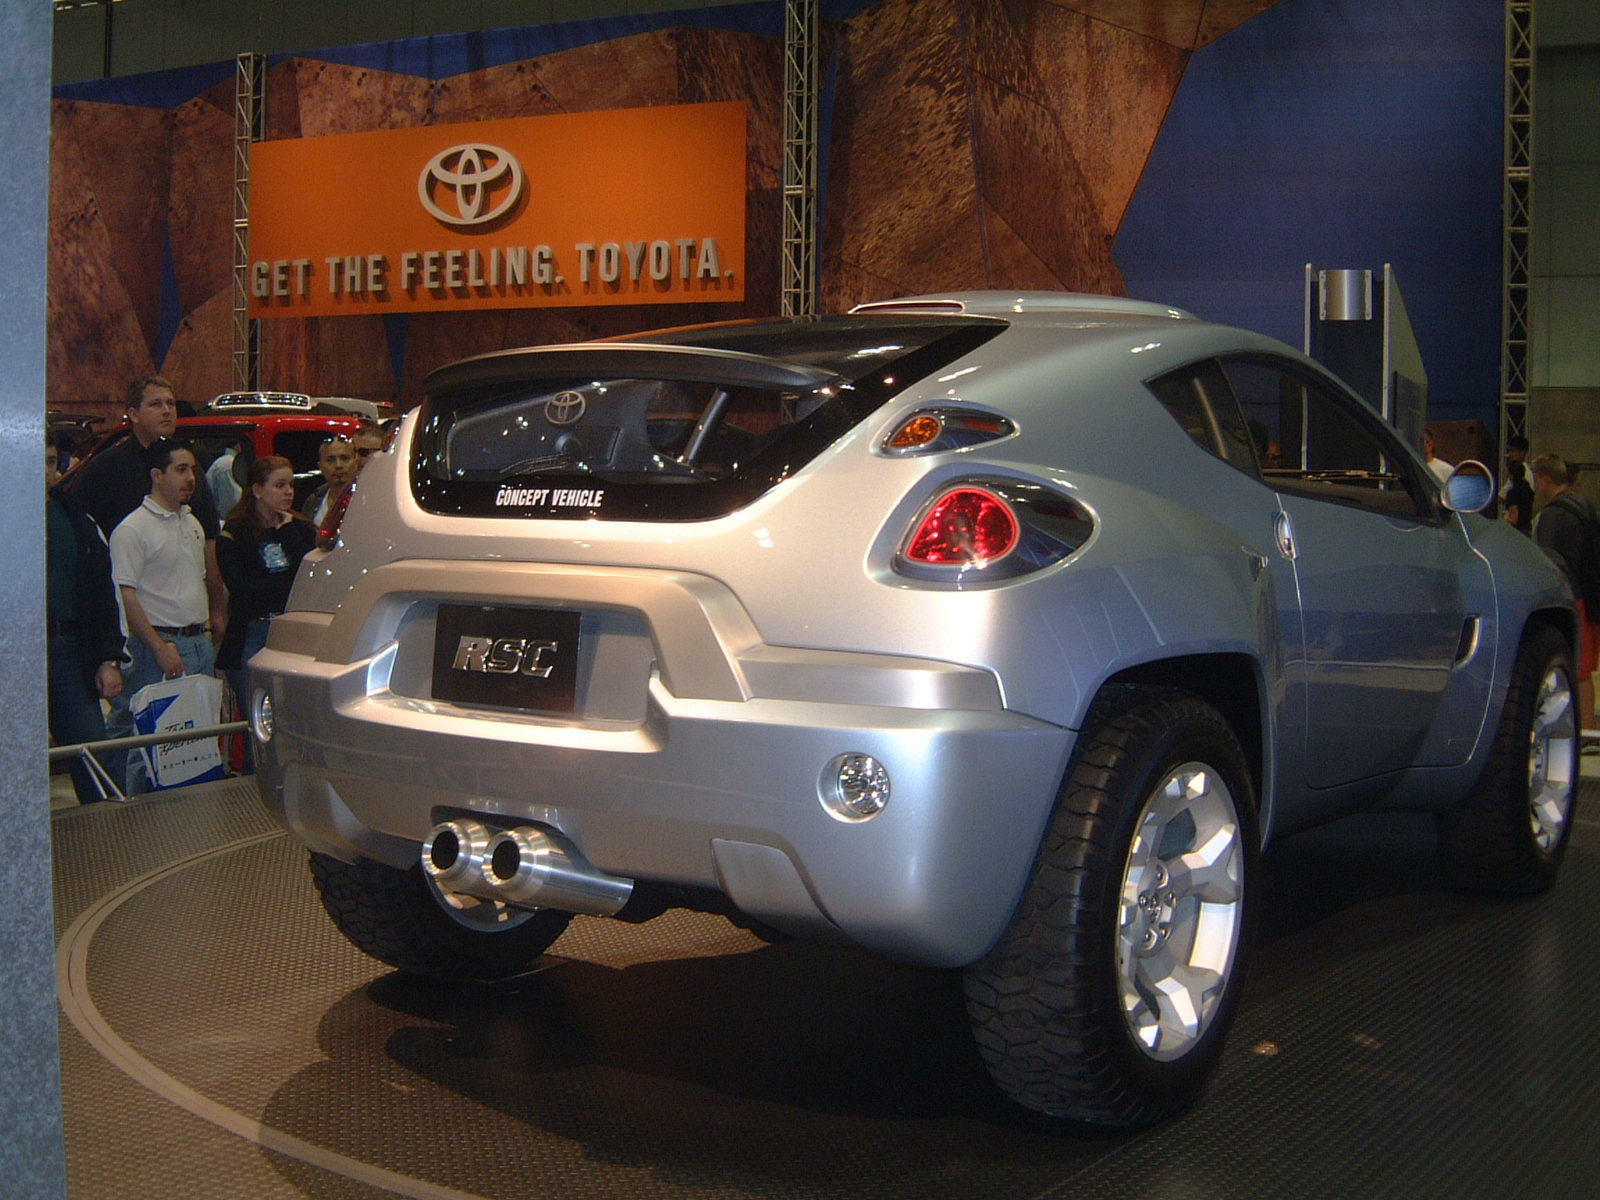 Toyota_RSC_LA_autoshow_2002_(rear_view).jpg